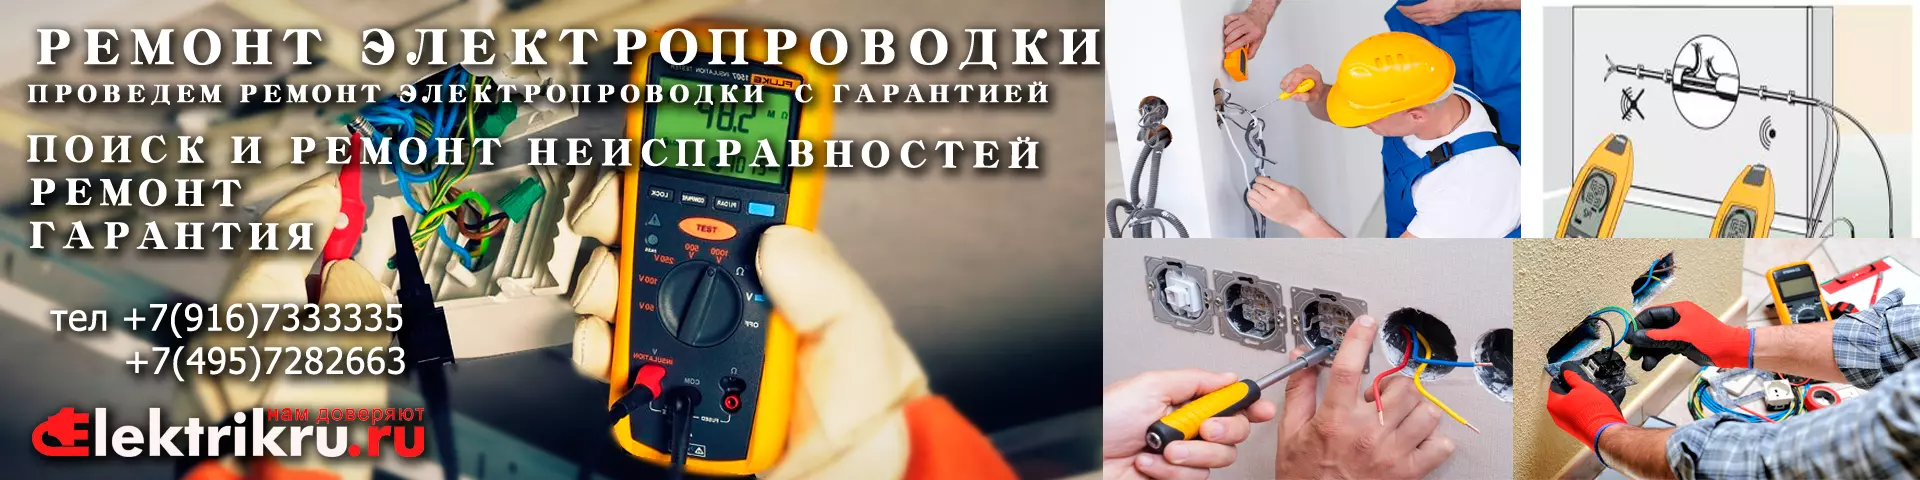 Вызов электрика на дом в Киев - это просто!